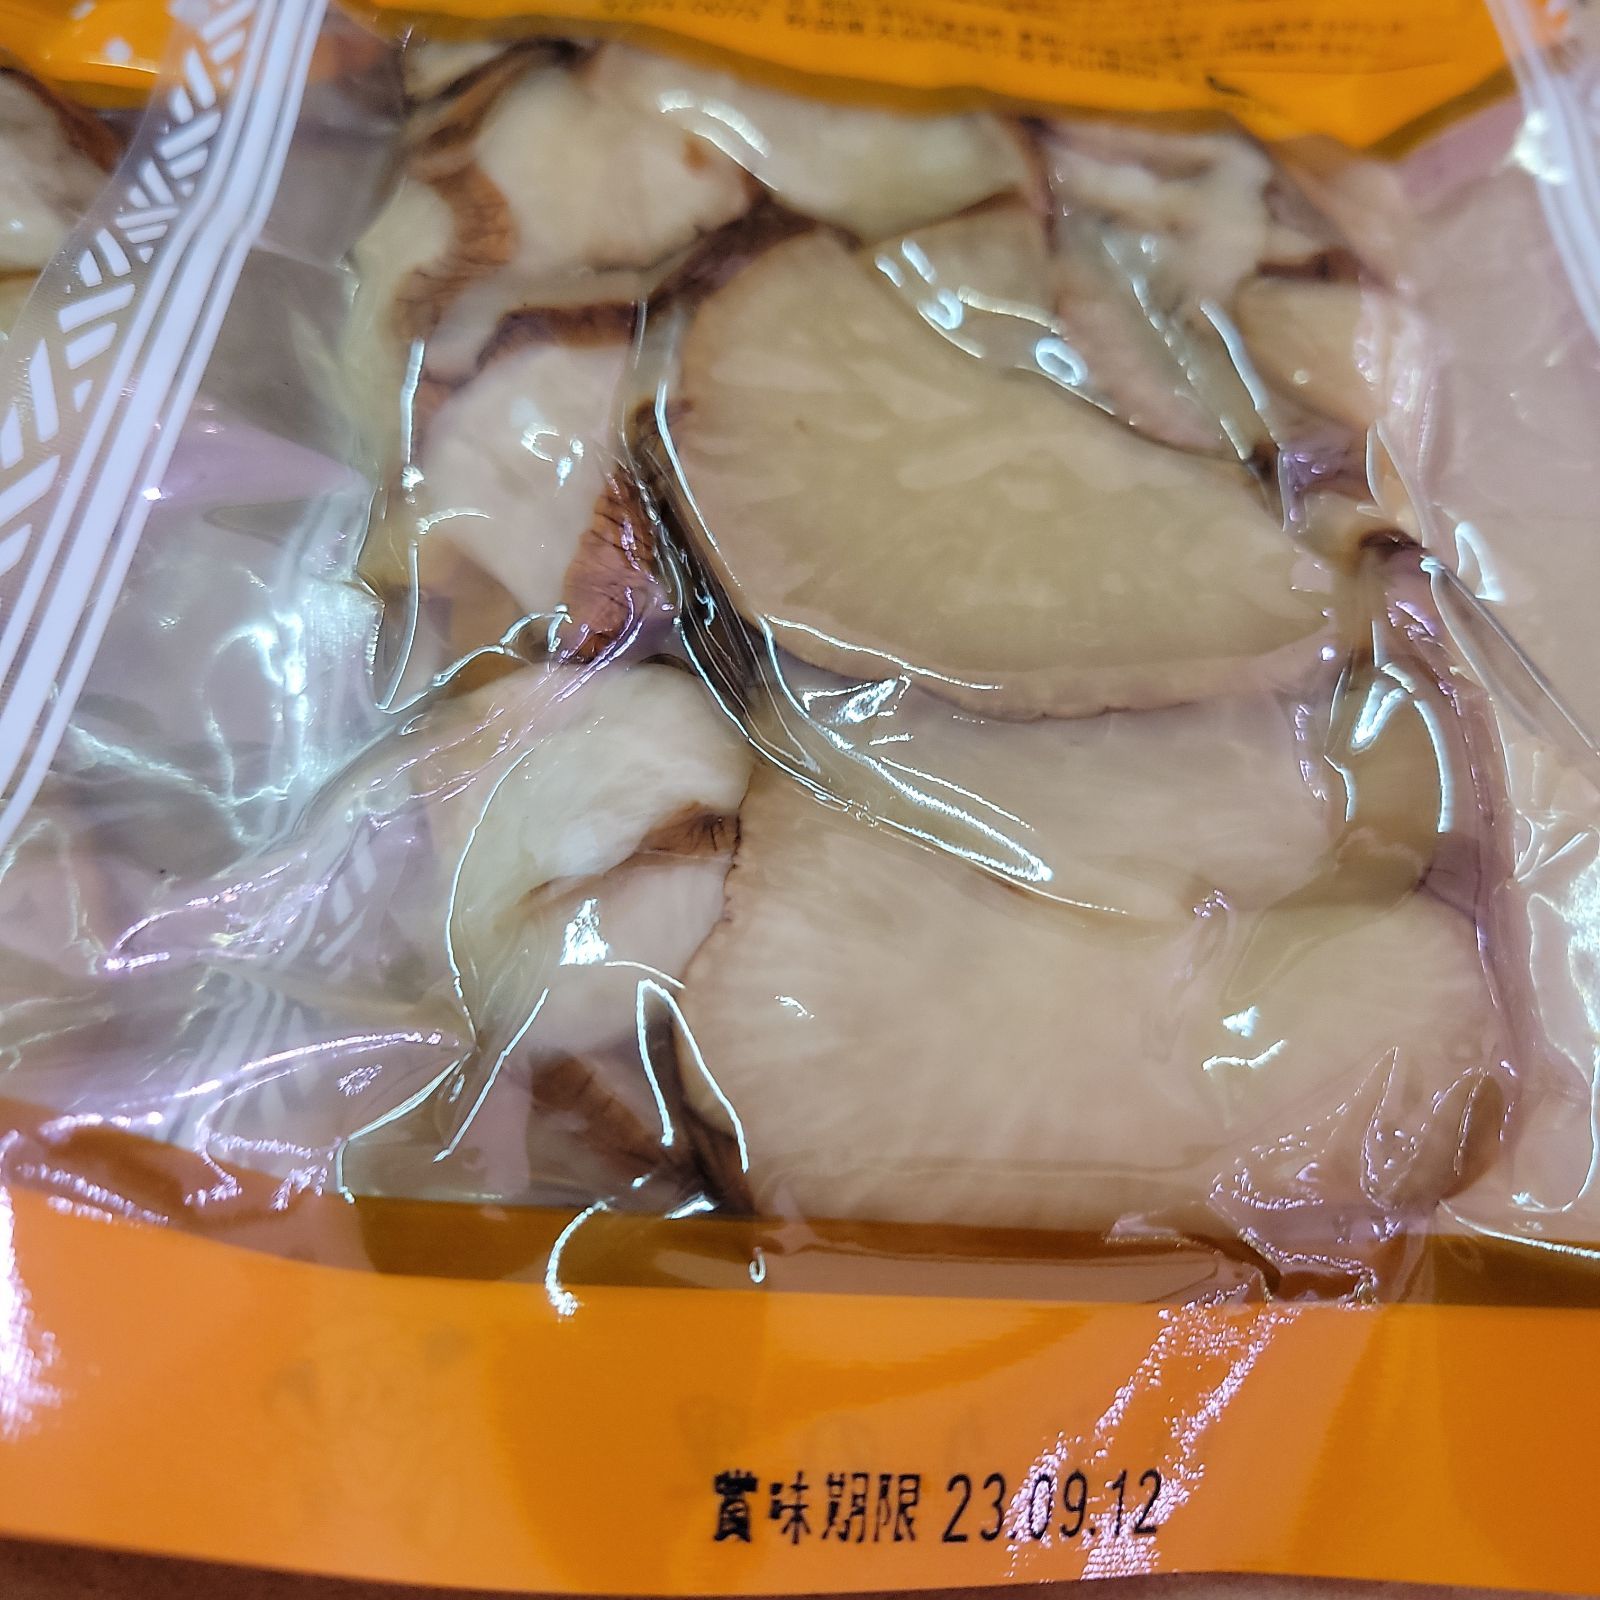 農業生産法人 いぶりの里 いぶりがっこスライス 100ｇ 2袋 いぶりがっこ 秋田県 漬物 特産品 つけもの たくあん たくあん漬け 送料無料 食べきりサイズ